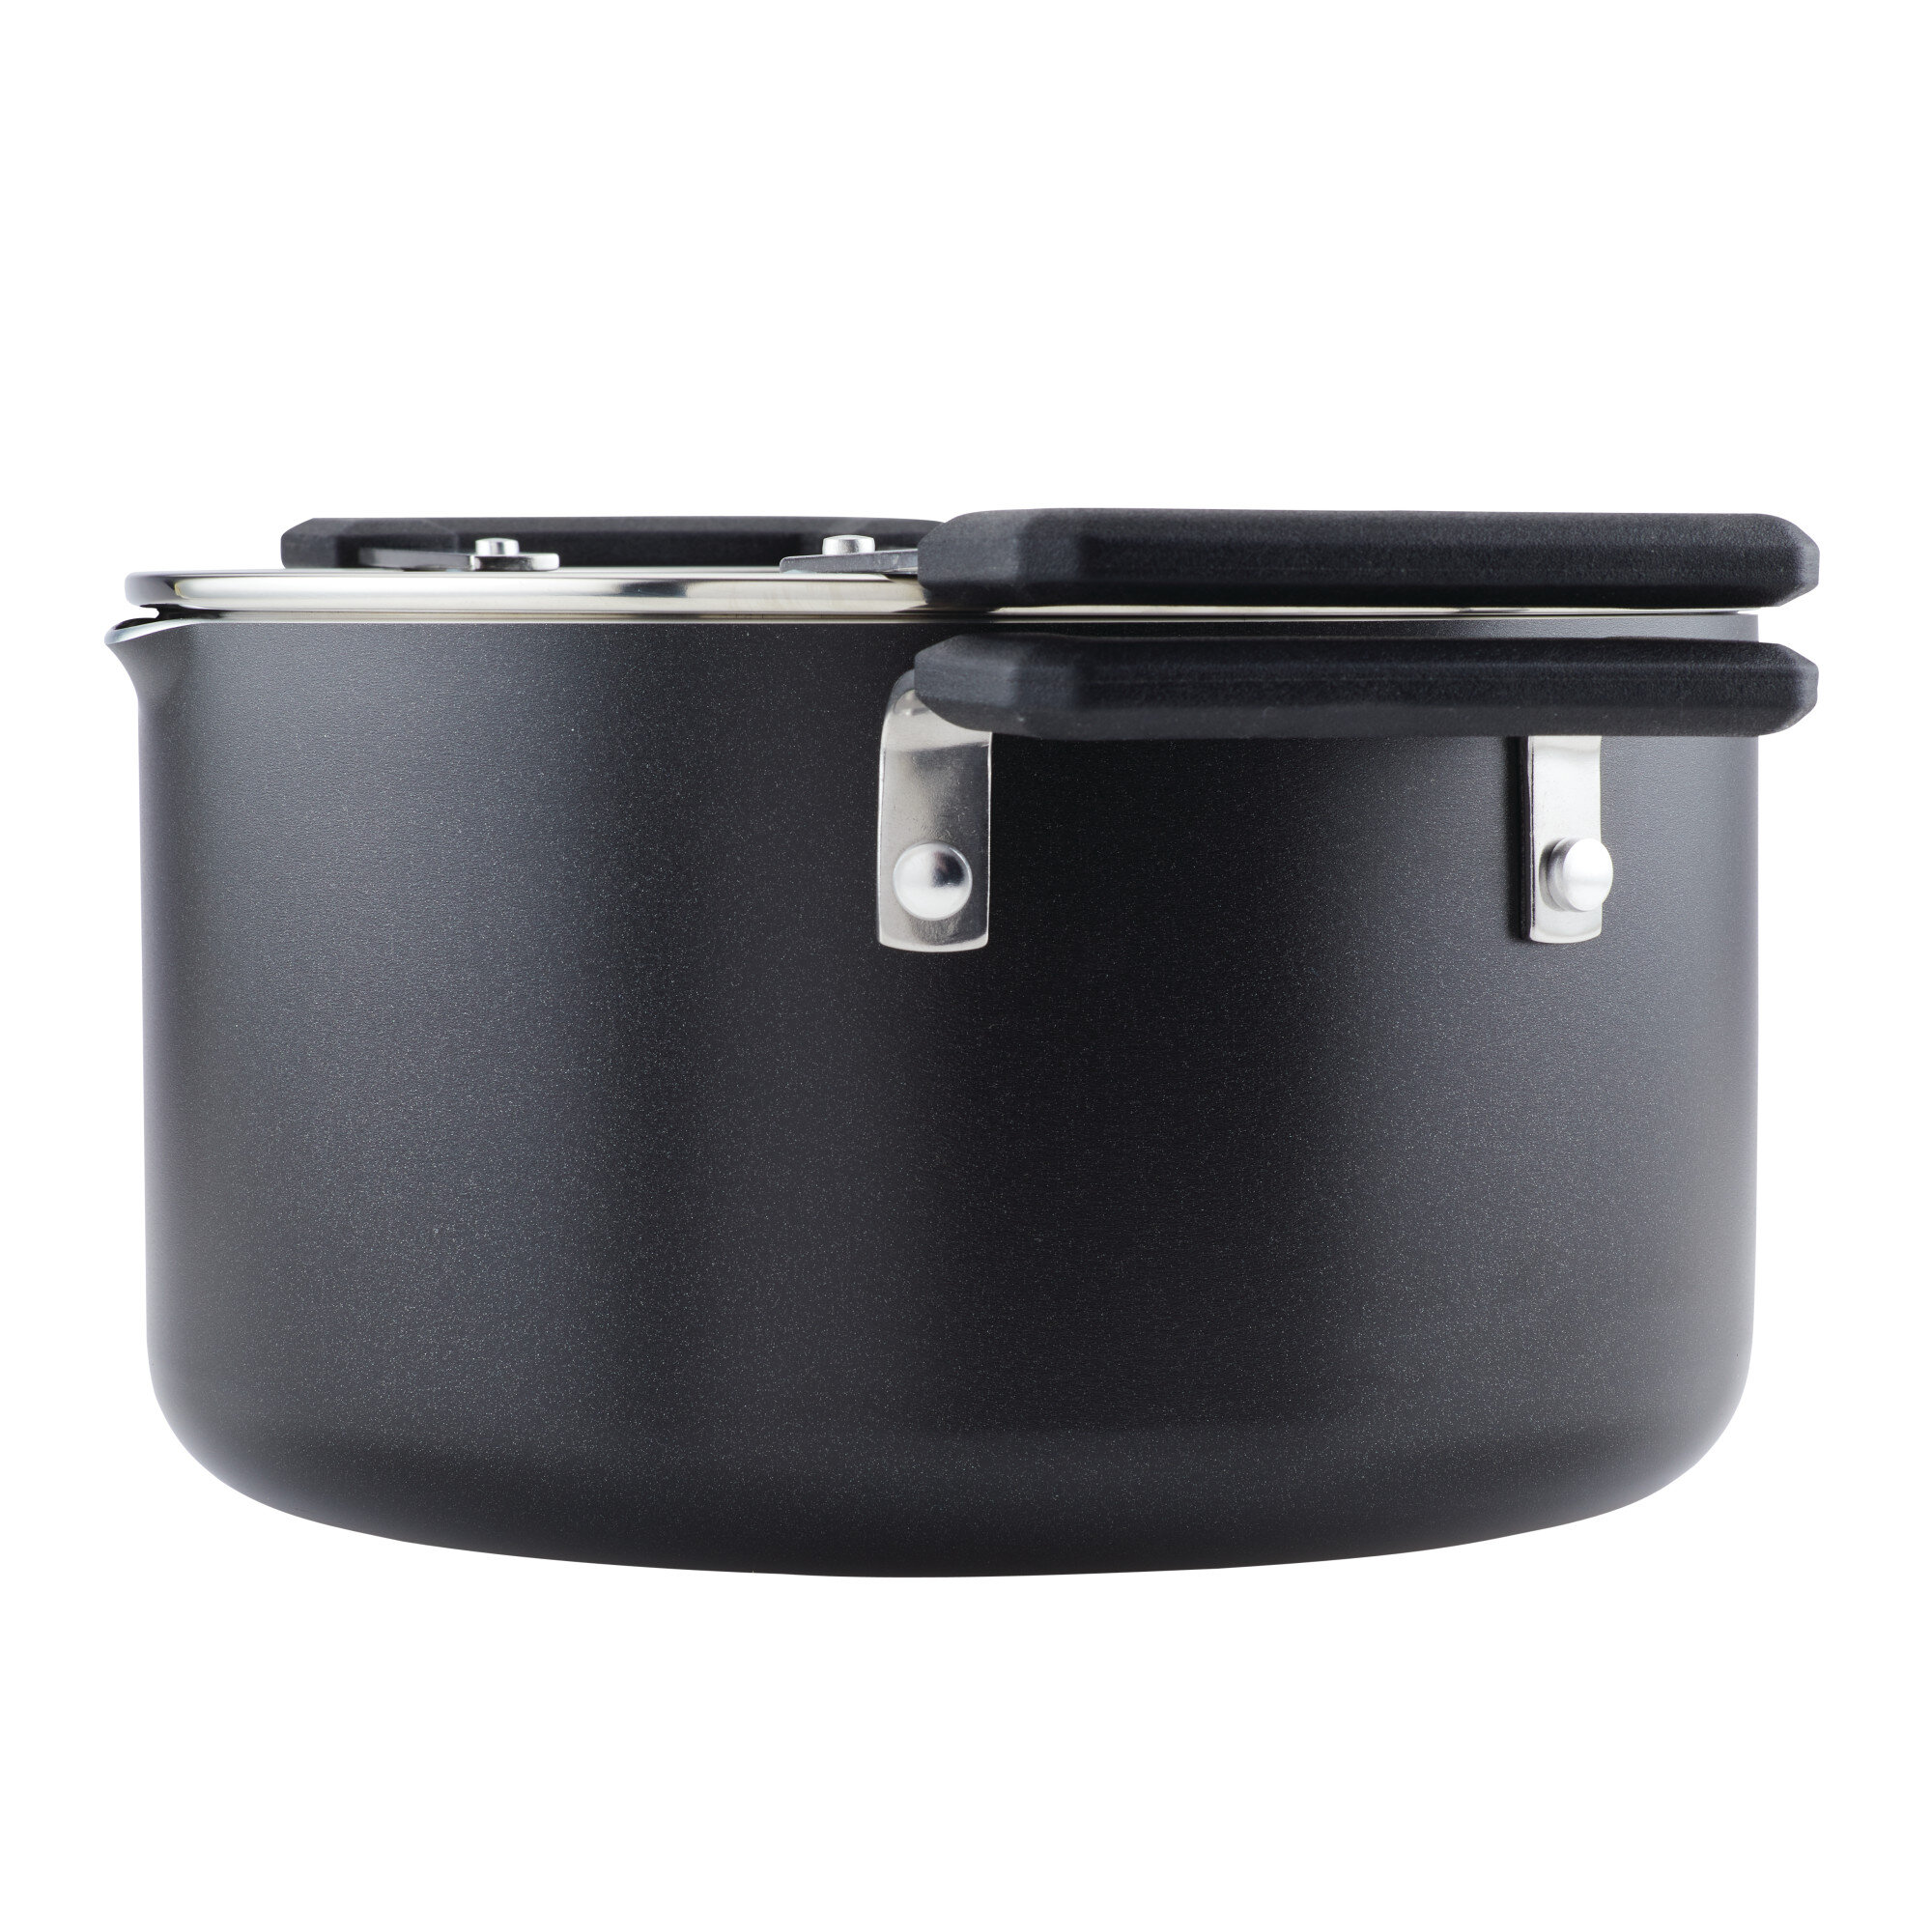 Farberware High Performance 17-Piece Nonstick Cookware Set, Black